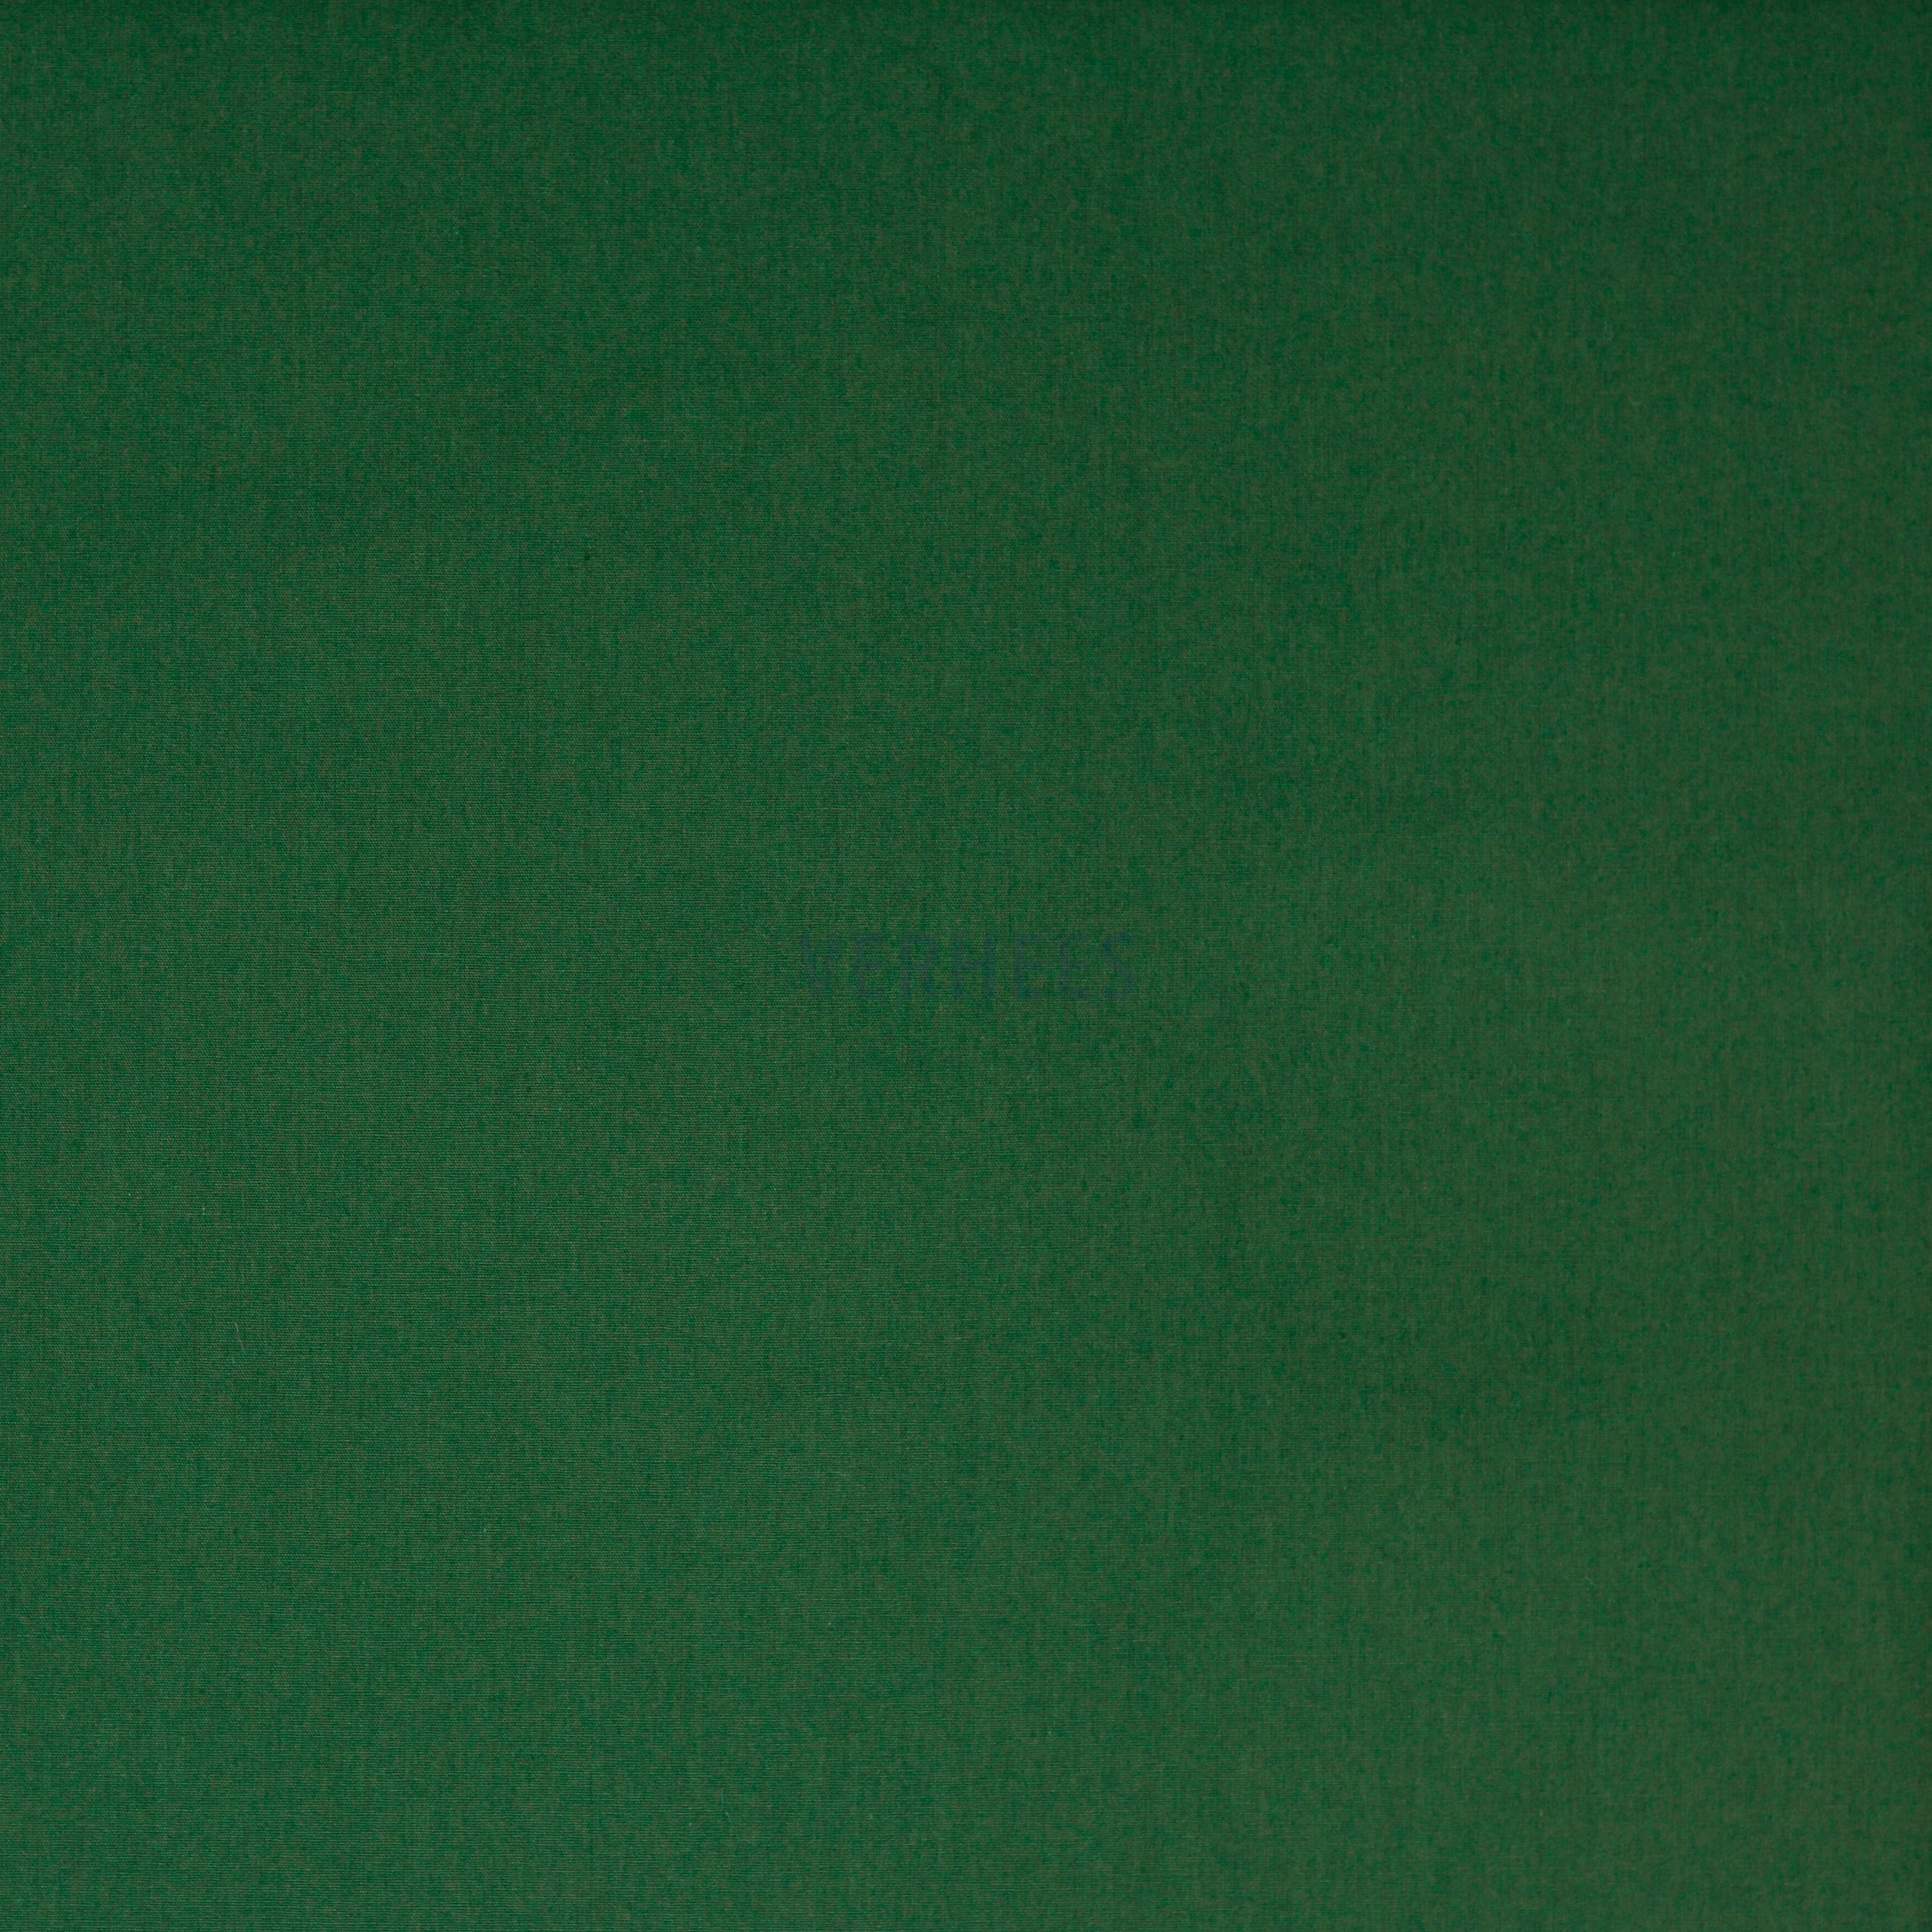 COTTON POPLIN DARK GREEN (high resolution)